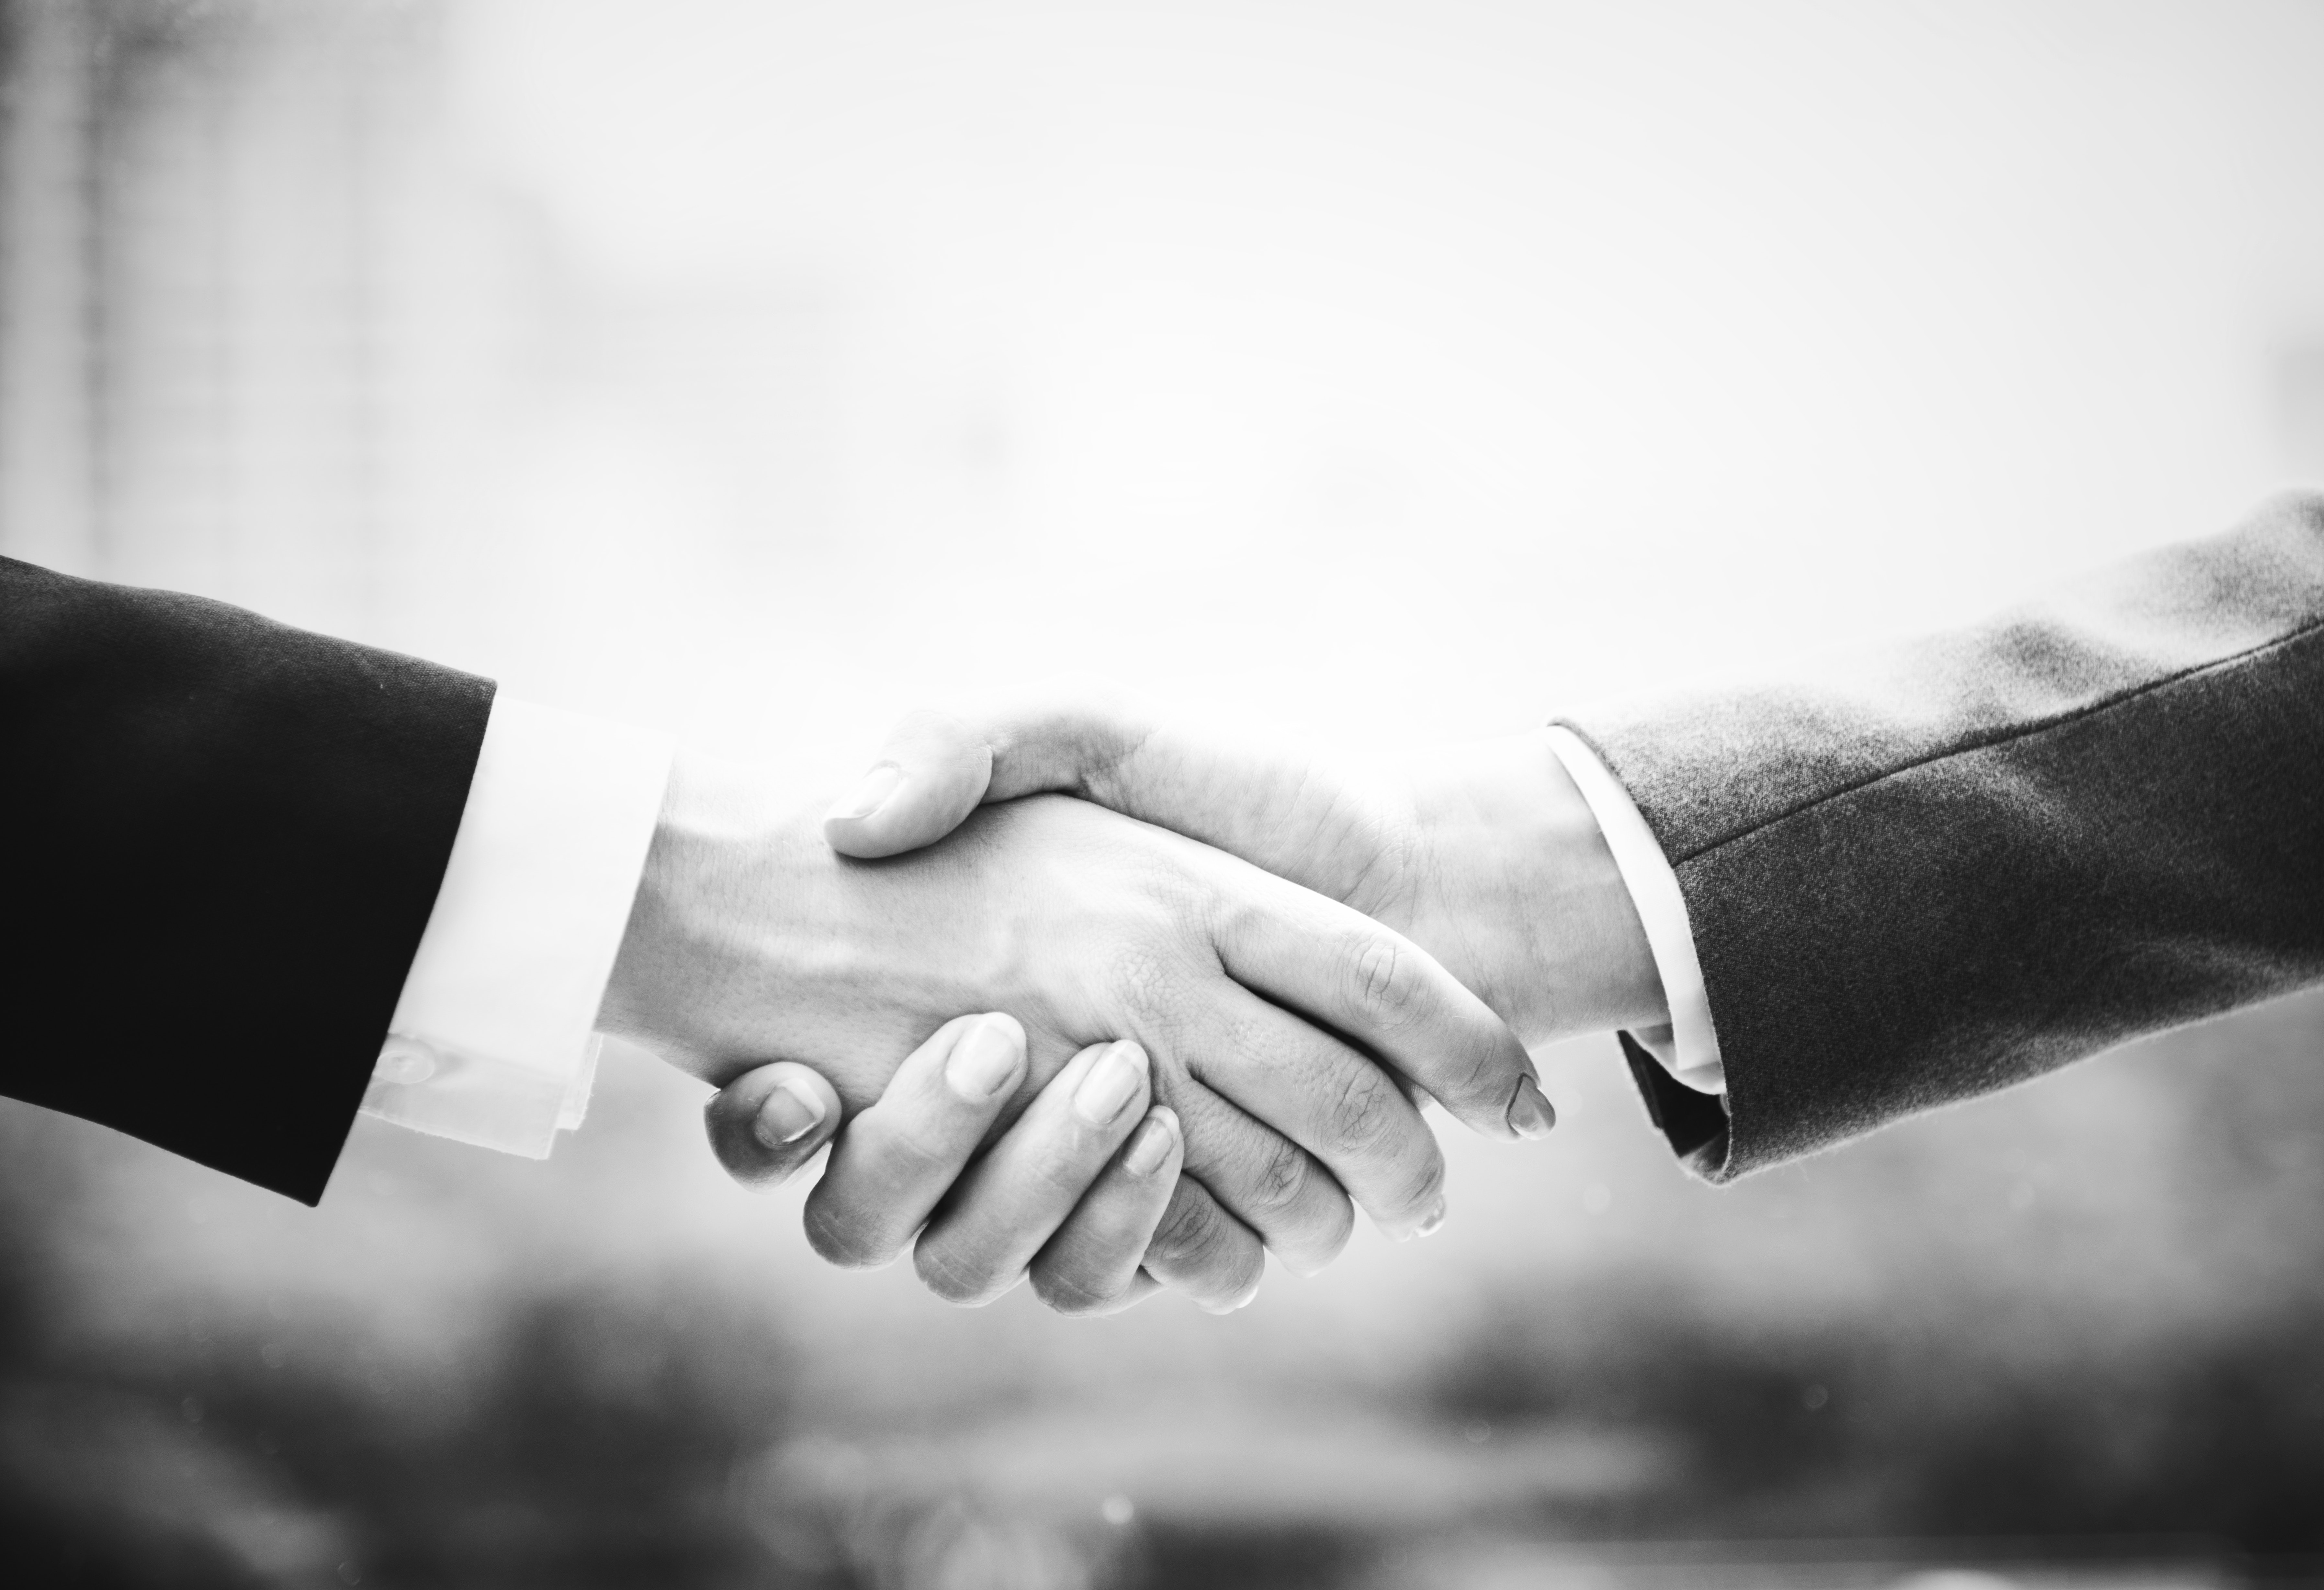 business deal handshake